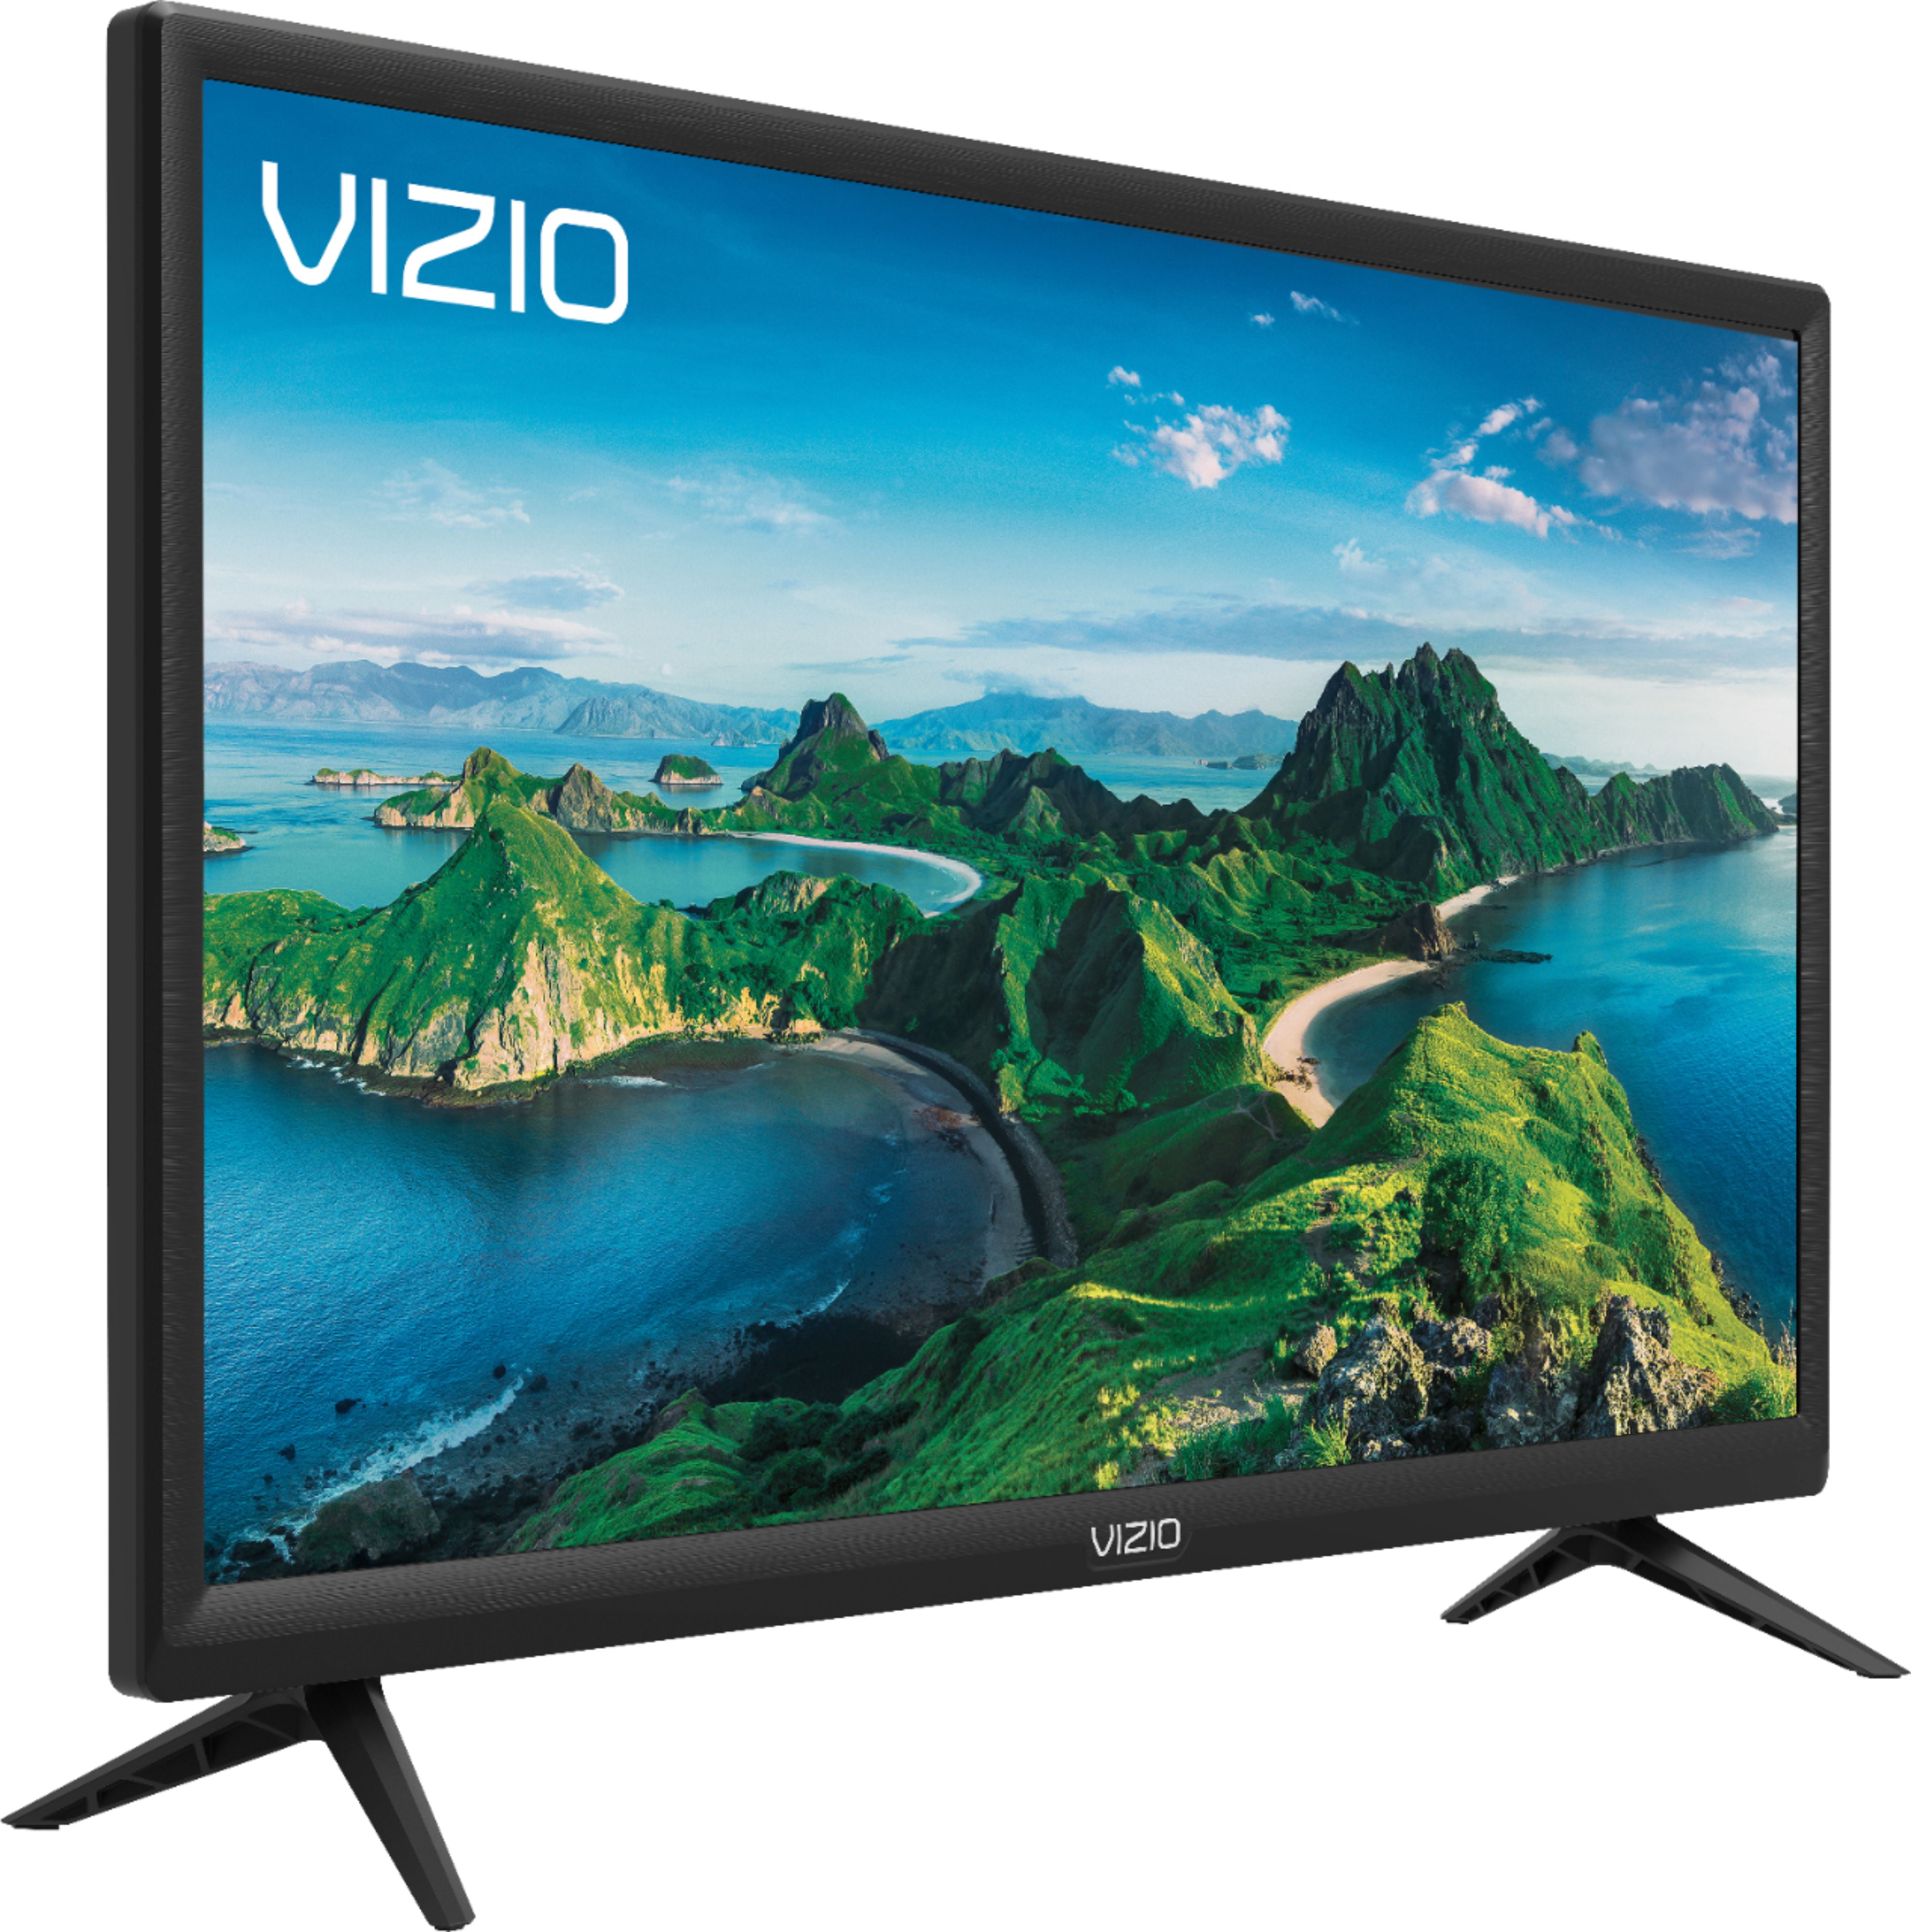 Vizio 24" Class HD 720P D24H-G9 Smart LED TV 